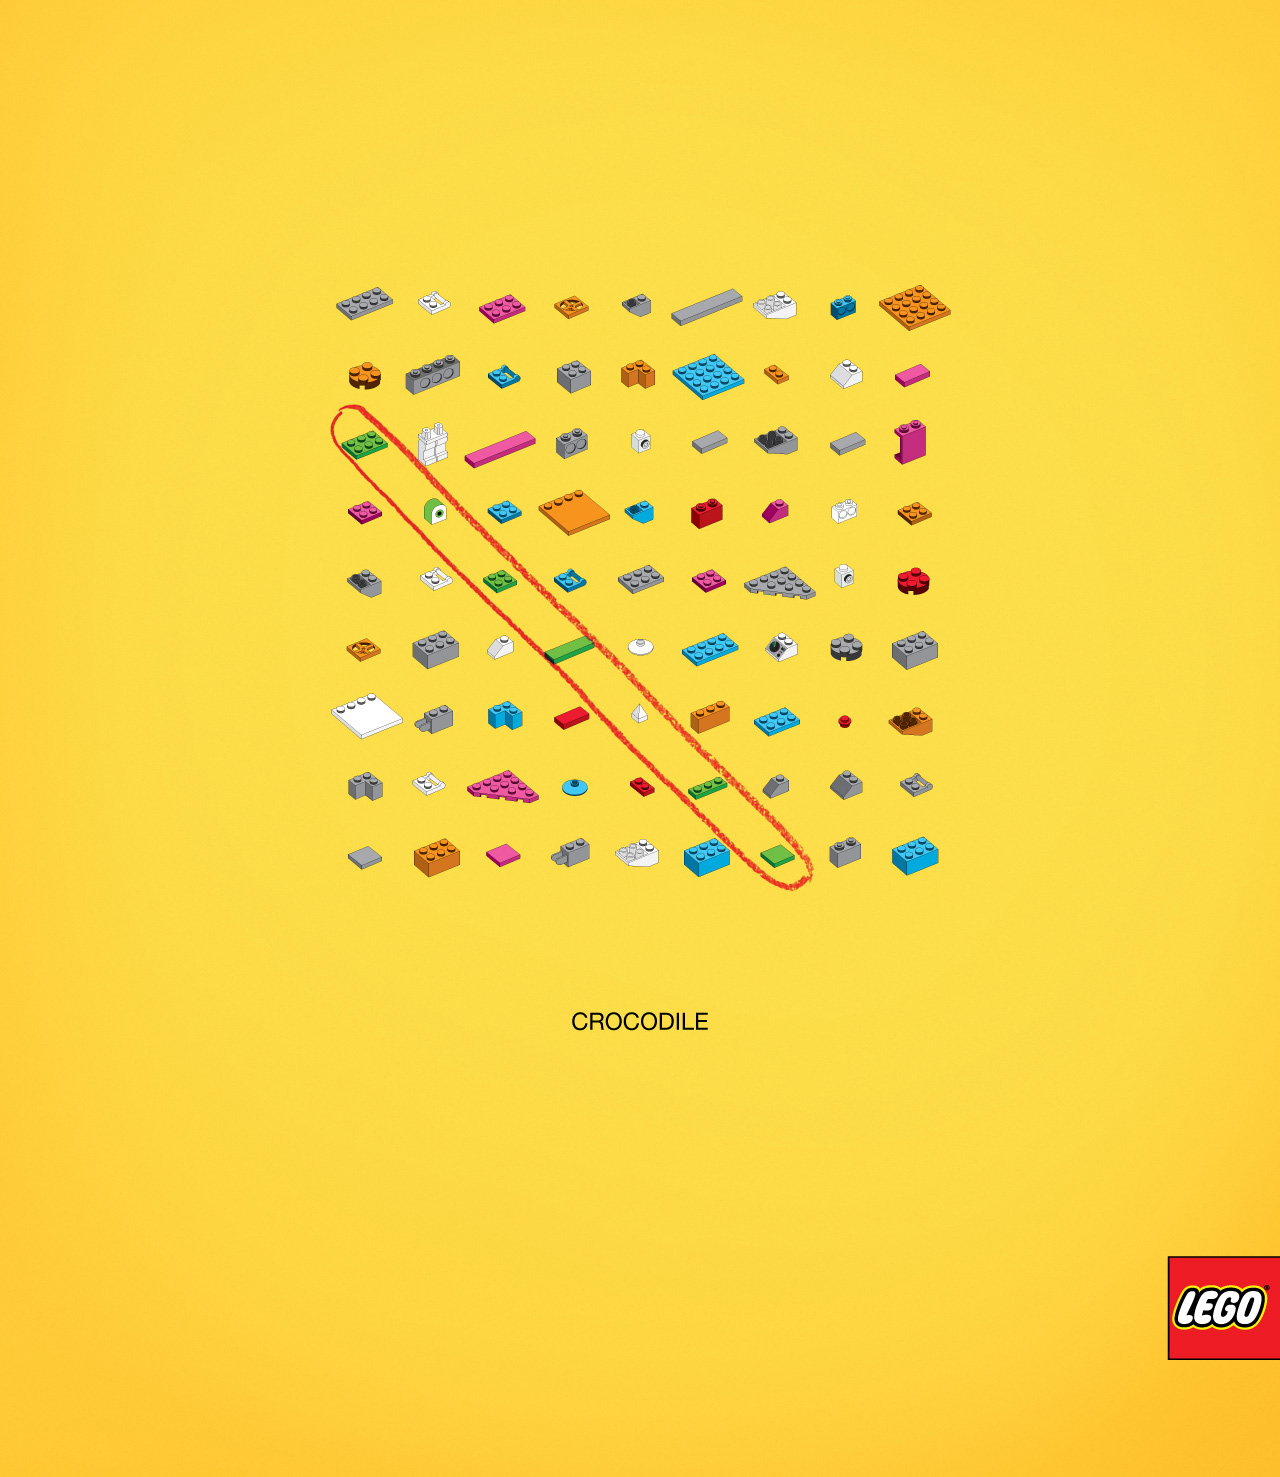 nyt år kapsel økse LEGO crosswords ad campaign - Fonts In Use